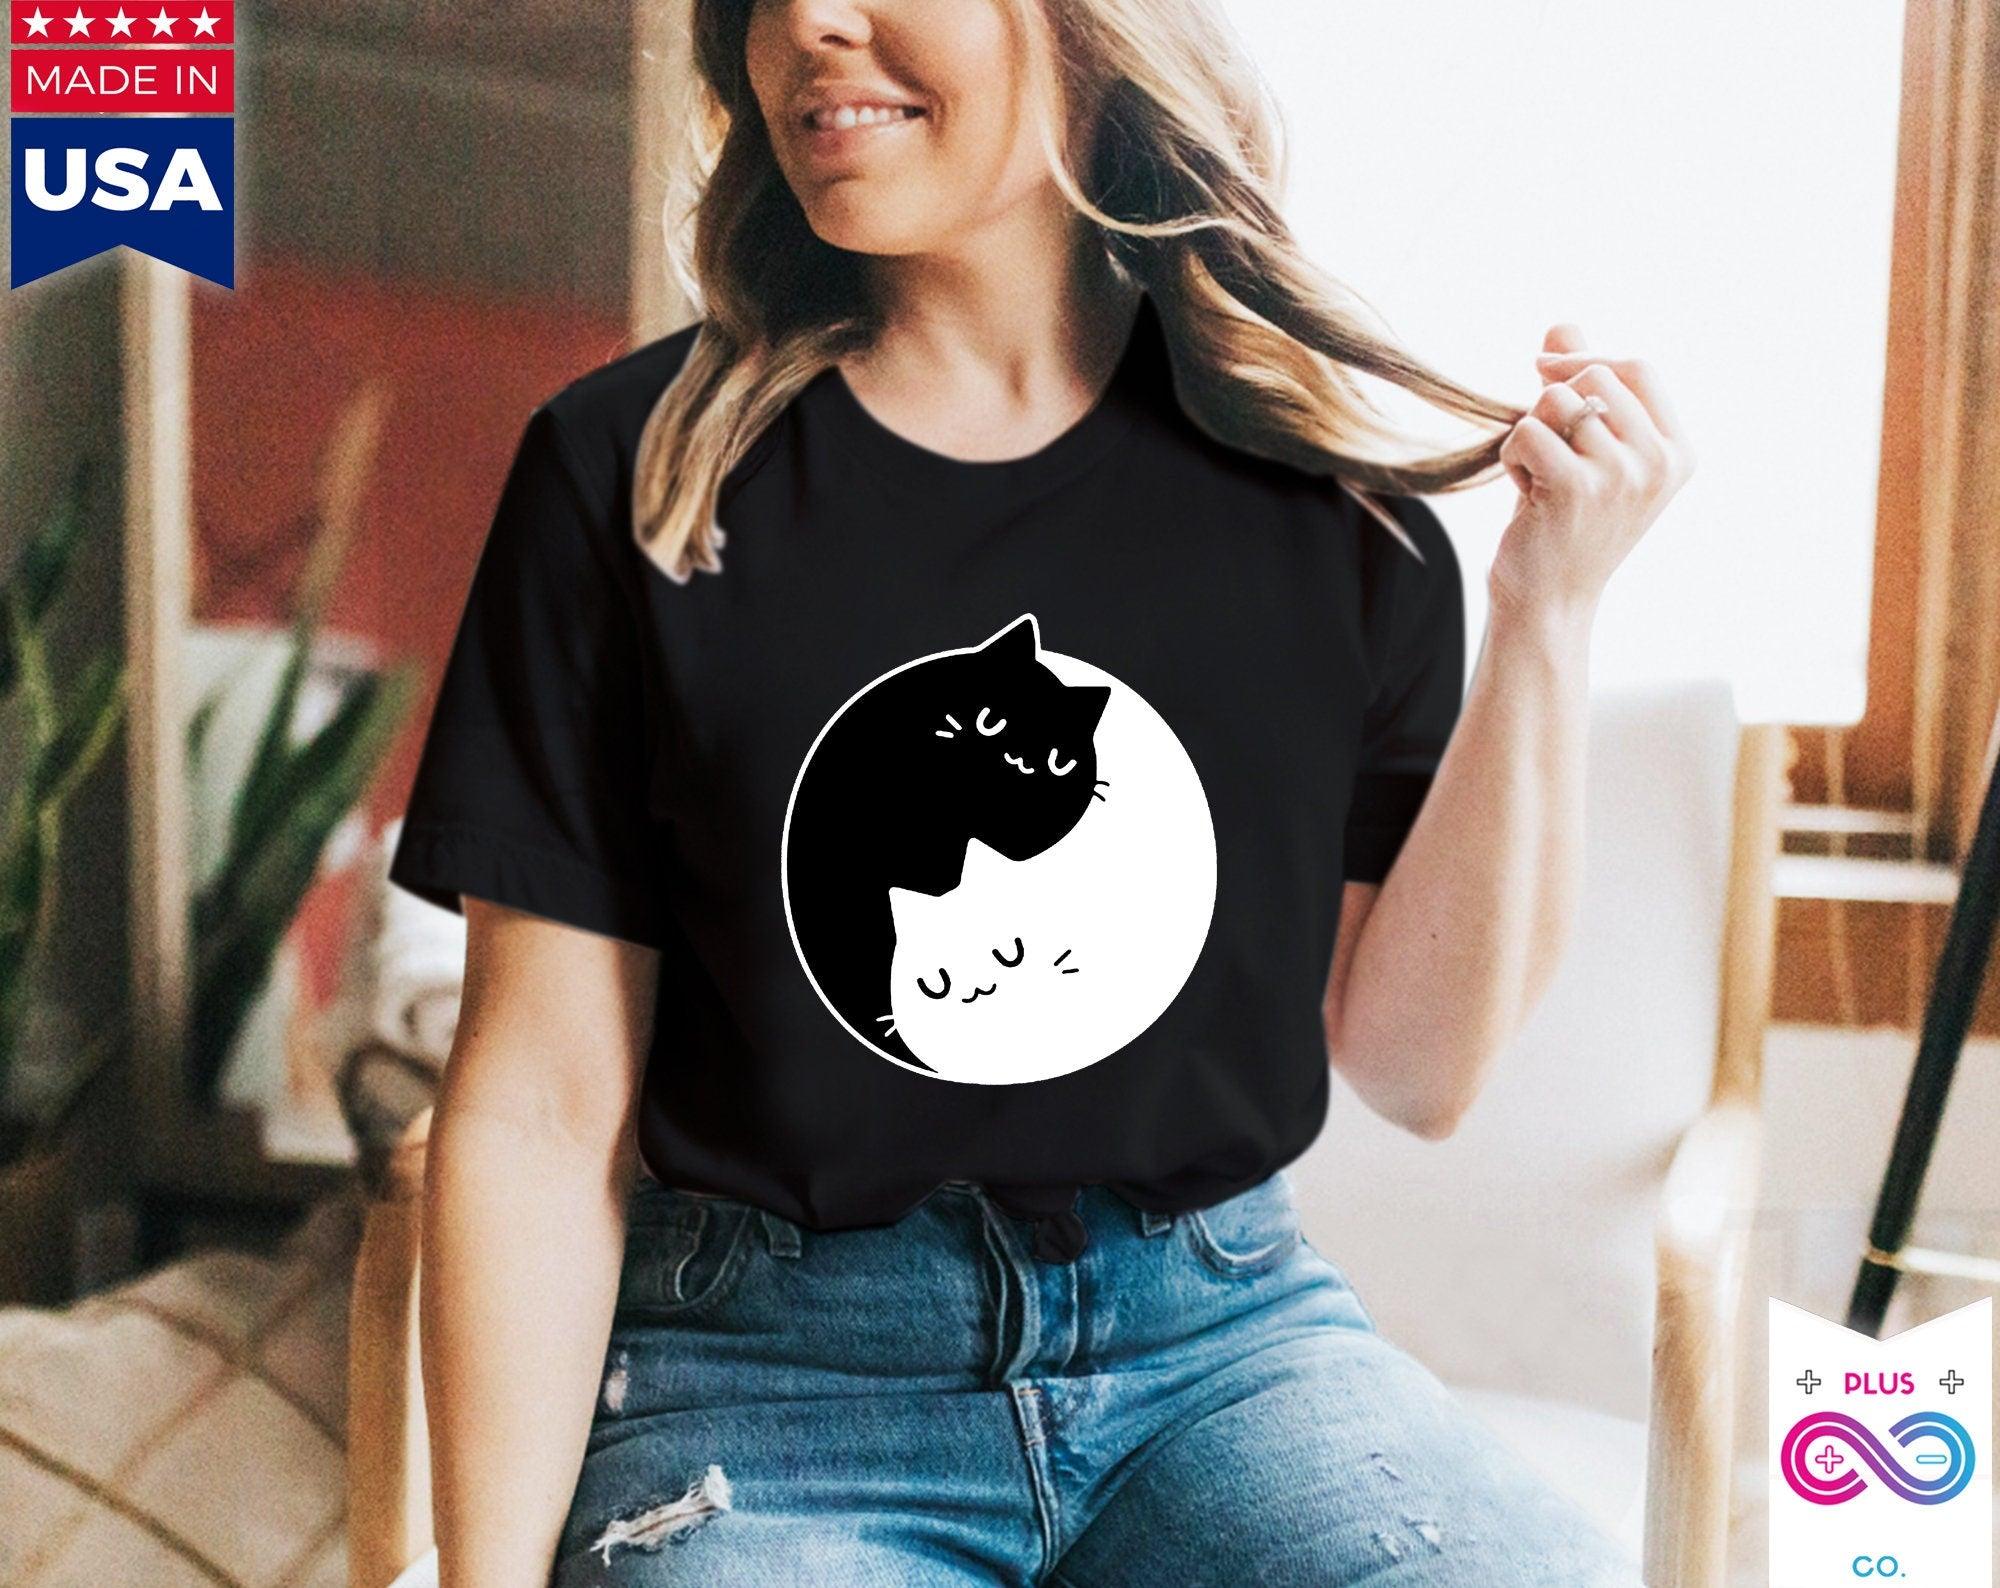 음양 고양이 티셔츠 , 음양 이중성 || 음양 고양이 || 완벽한 선물 - SML Xl - 여성, 남성 남녀공용 || Bff 커플 선물 아이디어, Cat Mom 티셔츠, 티셔츠 - plusminusco.com